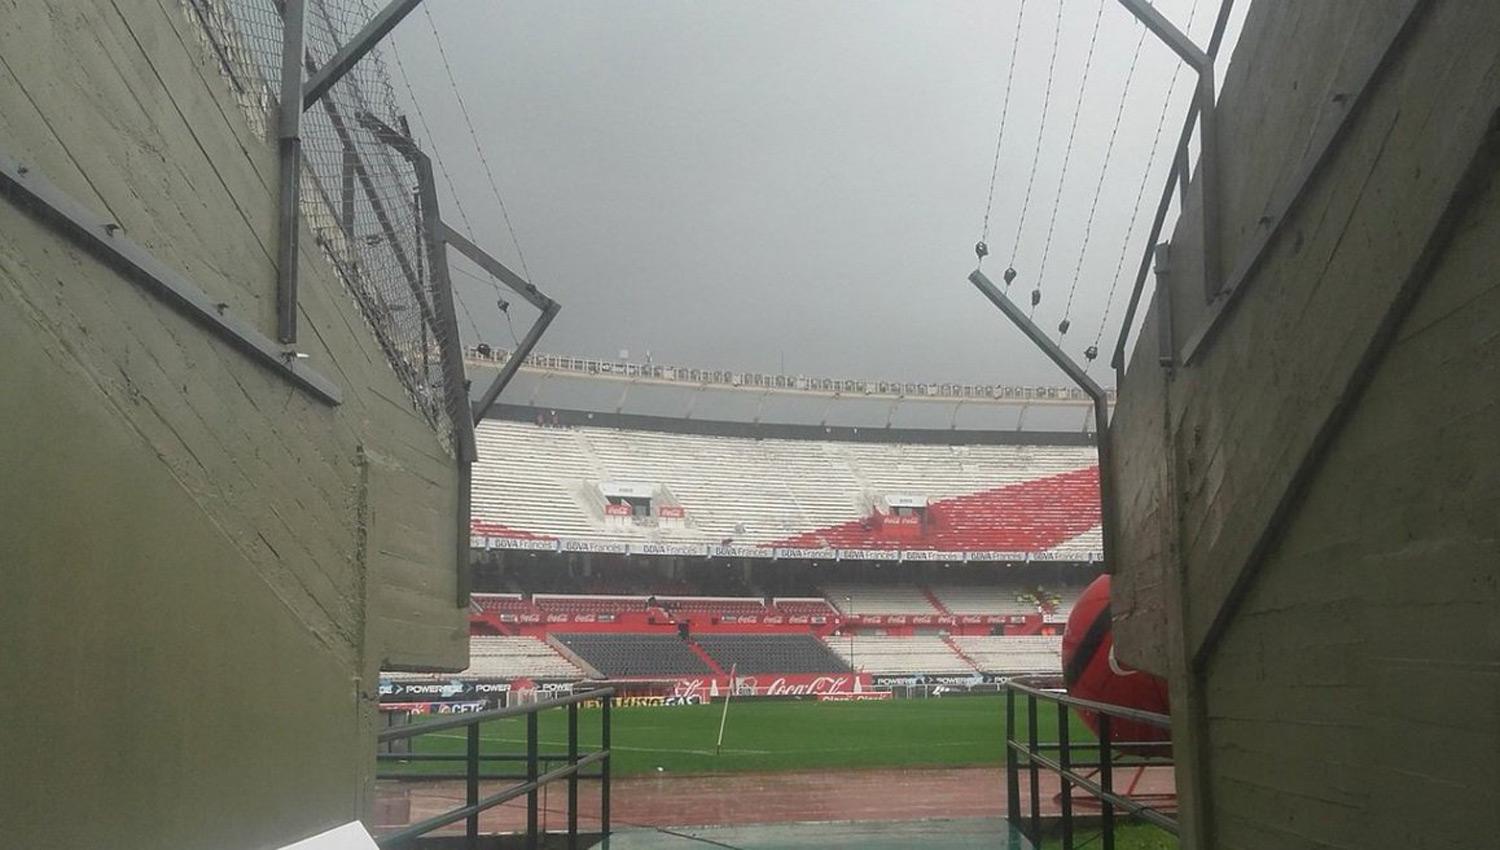 SUSPENDIDO. El partido entre River y Estudiantes en el estadio Monumental no se jugará a causa de las condiciones climáticas. (FOTO DE PASIÓN DEPORTIVA)